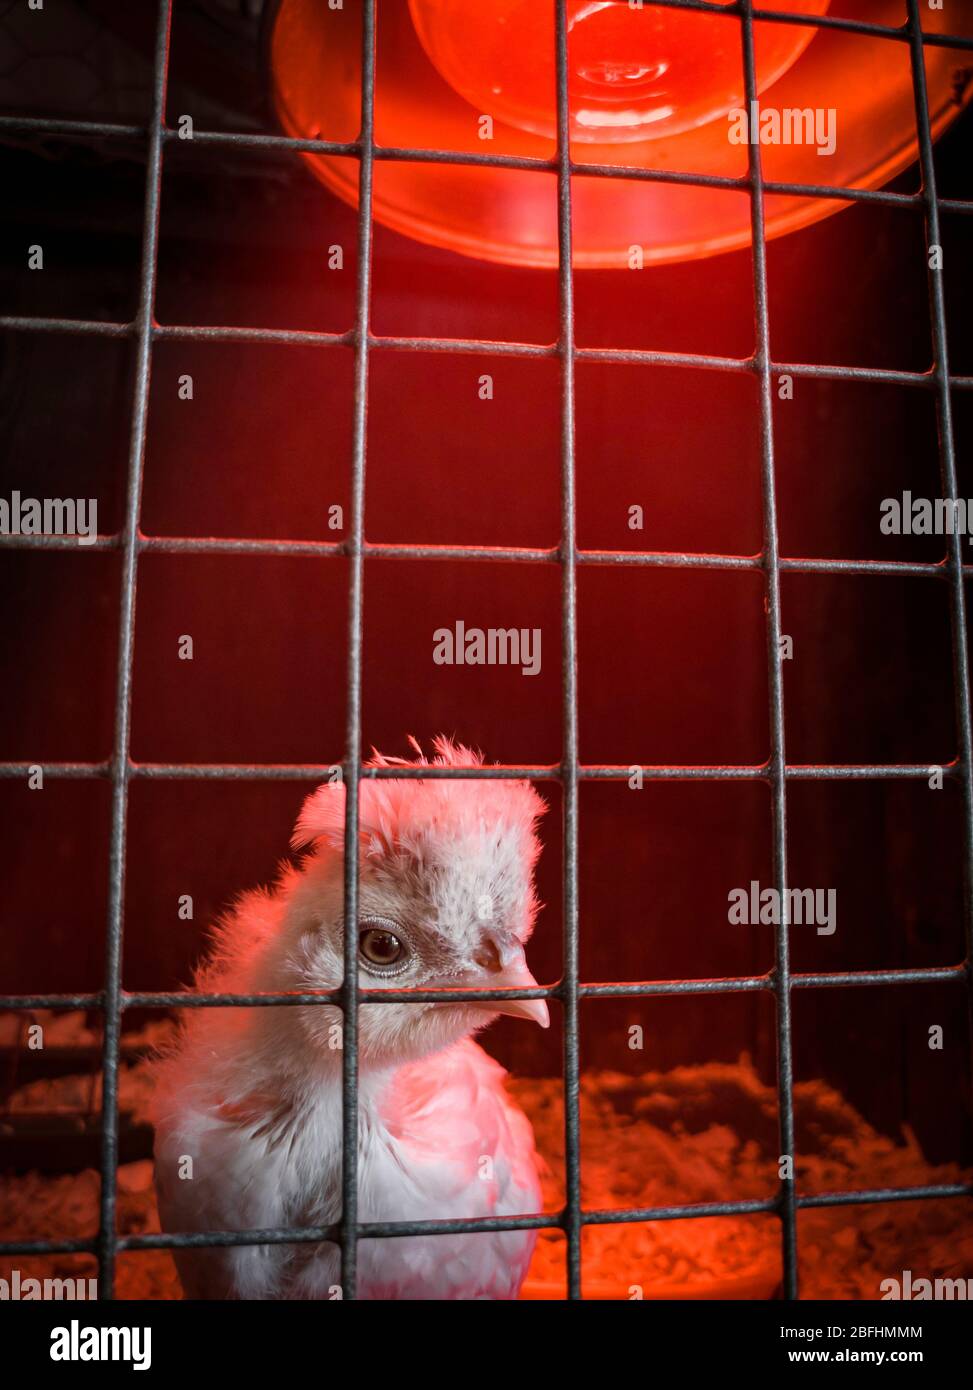 Auto-isolation/image de concept de quarantaine. Nouveau-né Chick sous une lampe de chauffage qui traverse les barres de sa cage. Sussex, Angleterre, Royaume-Uni Banque D'Images